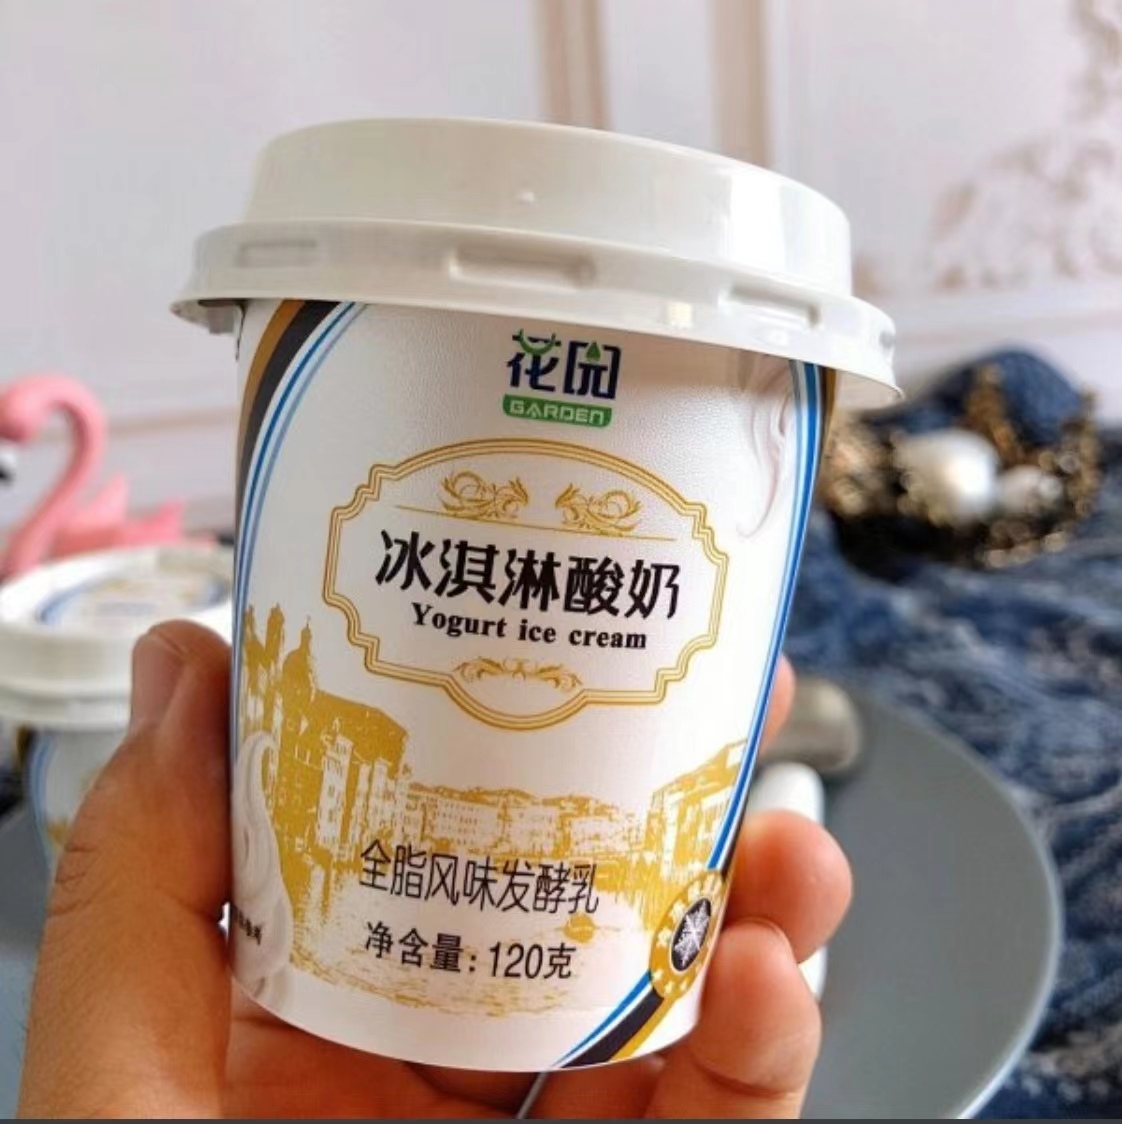 拼手速啦【现货️都是实际库存】花园冰淇淋酸奶 浓缩老酸奶 优质奶源 生产日期4.23